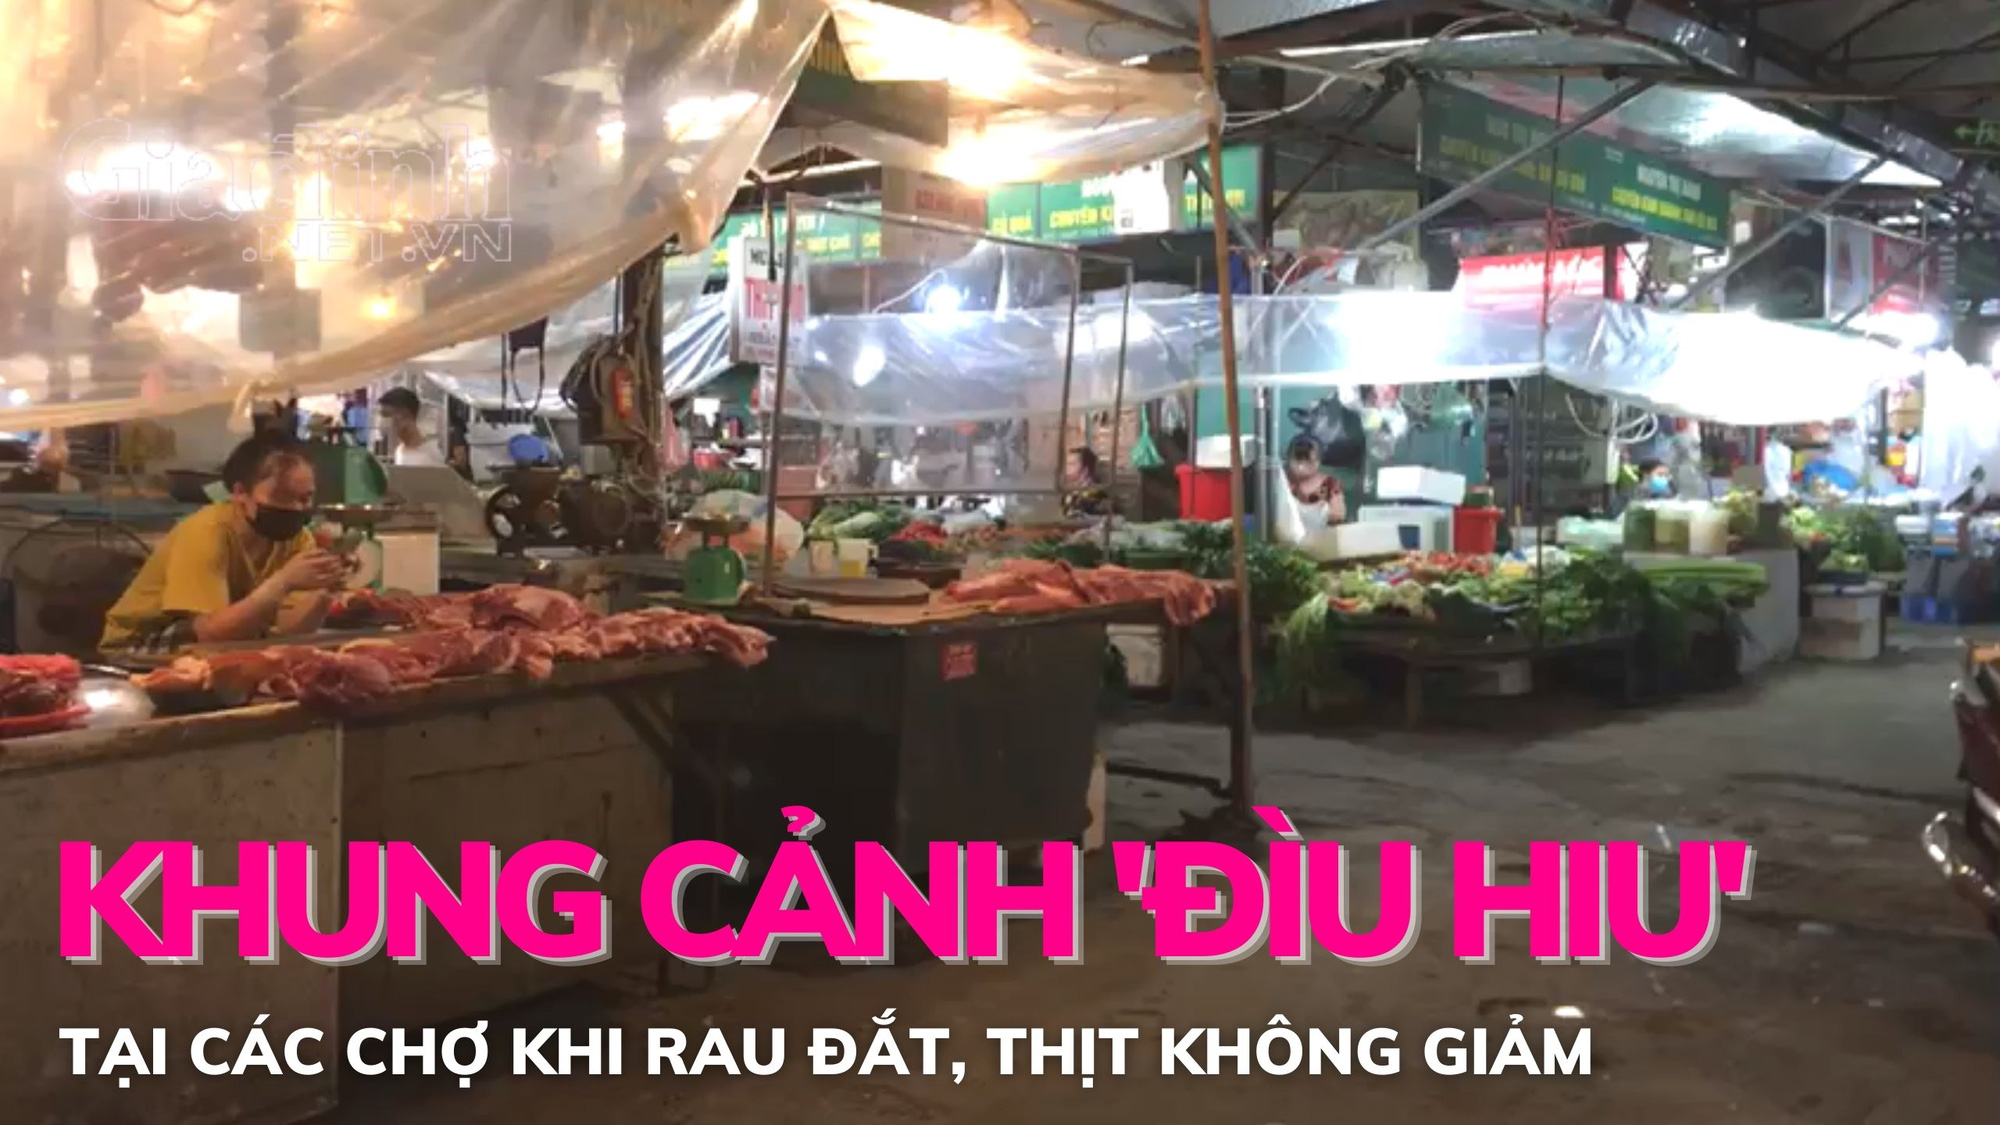 Khung cảnh 'đìu hiu' tại các chợ truyền thống khi rau đắt, thịt không giảm